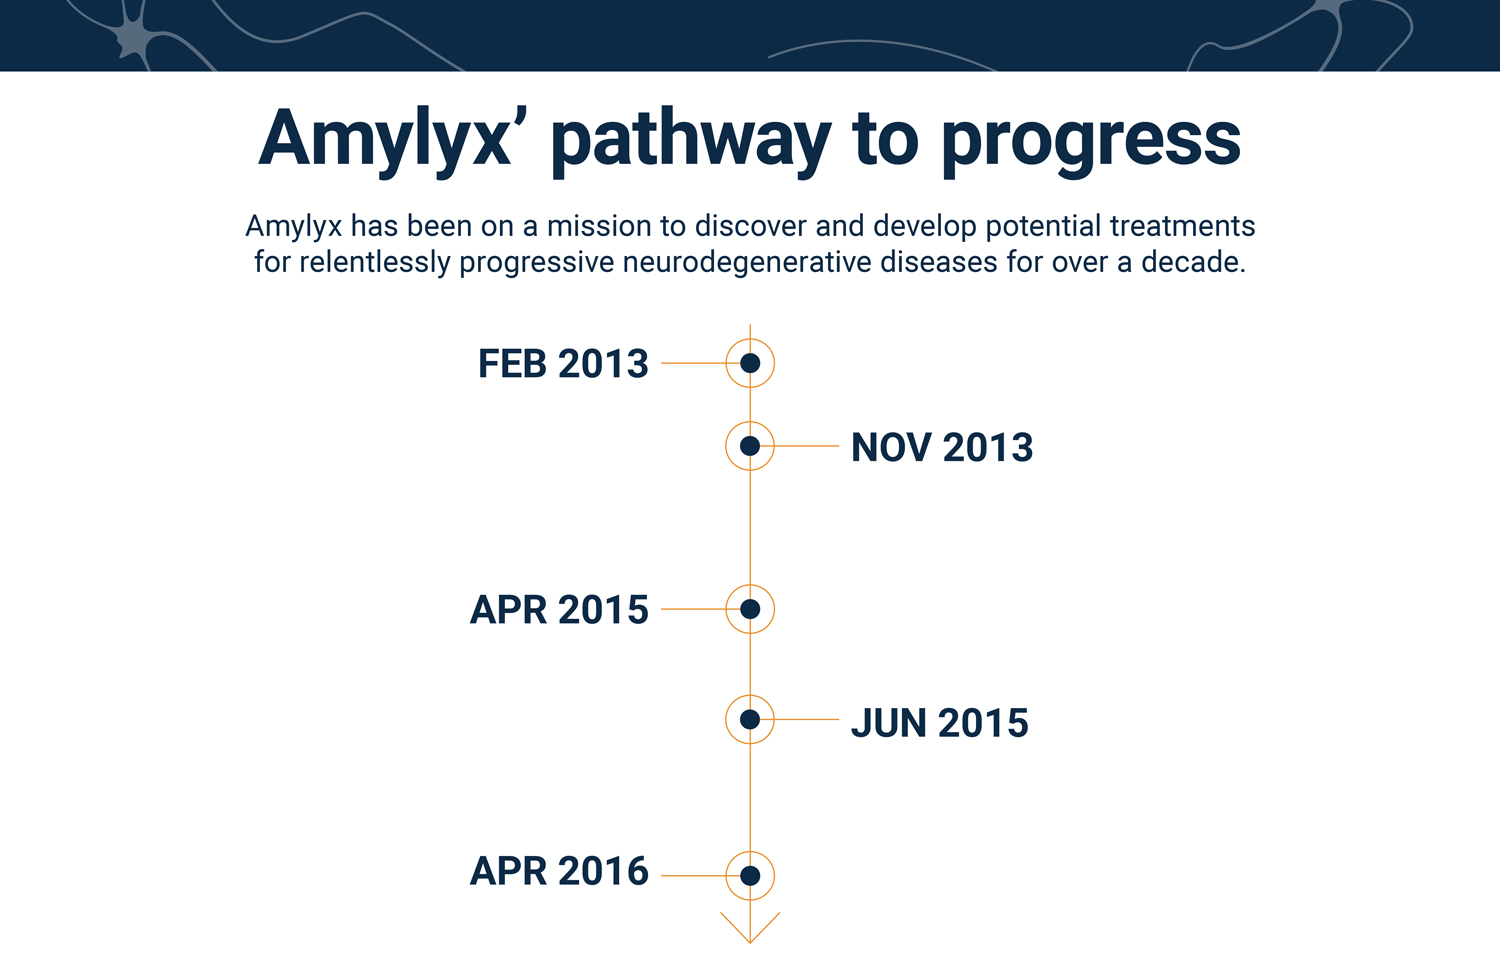 Timeline of Amylyx's path to progress